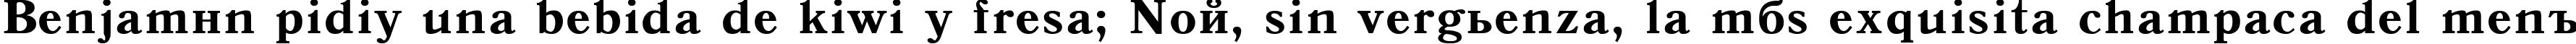 Пример написания шрифтом Antiqua 105b текста на испанском